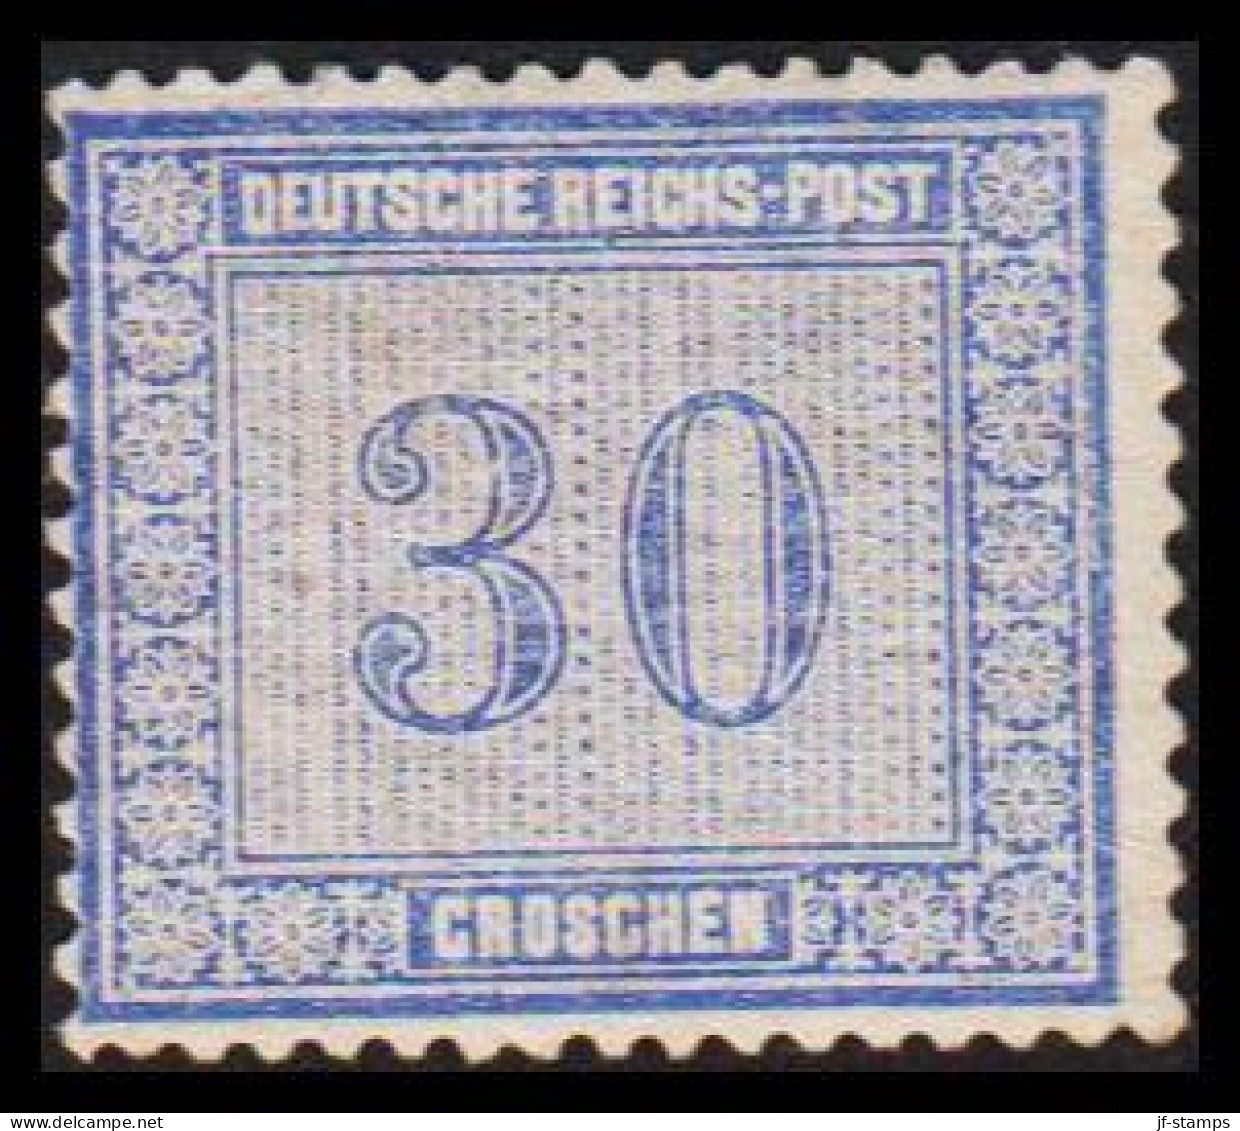 1872. DEUTSCHE REICHS-POST. 30 GROSCHEN. Nice Stamp Hinged, Thin Spot Reverse.  (Michel 13) - JF534008 - Ongebruikt